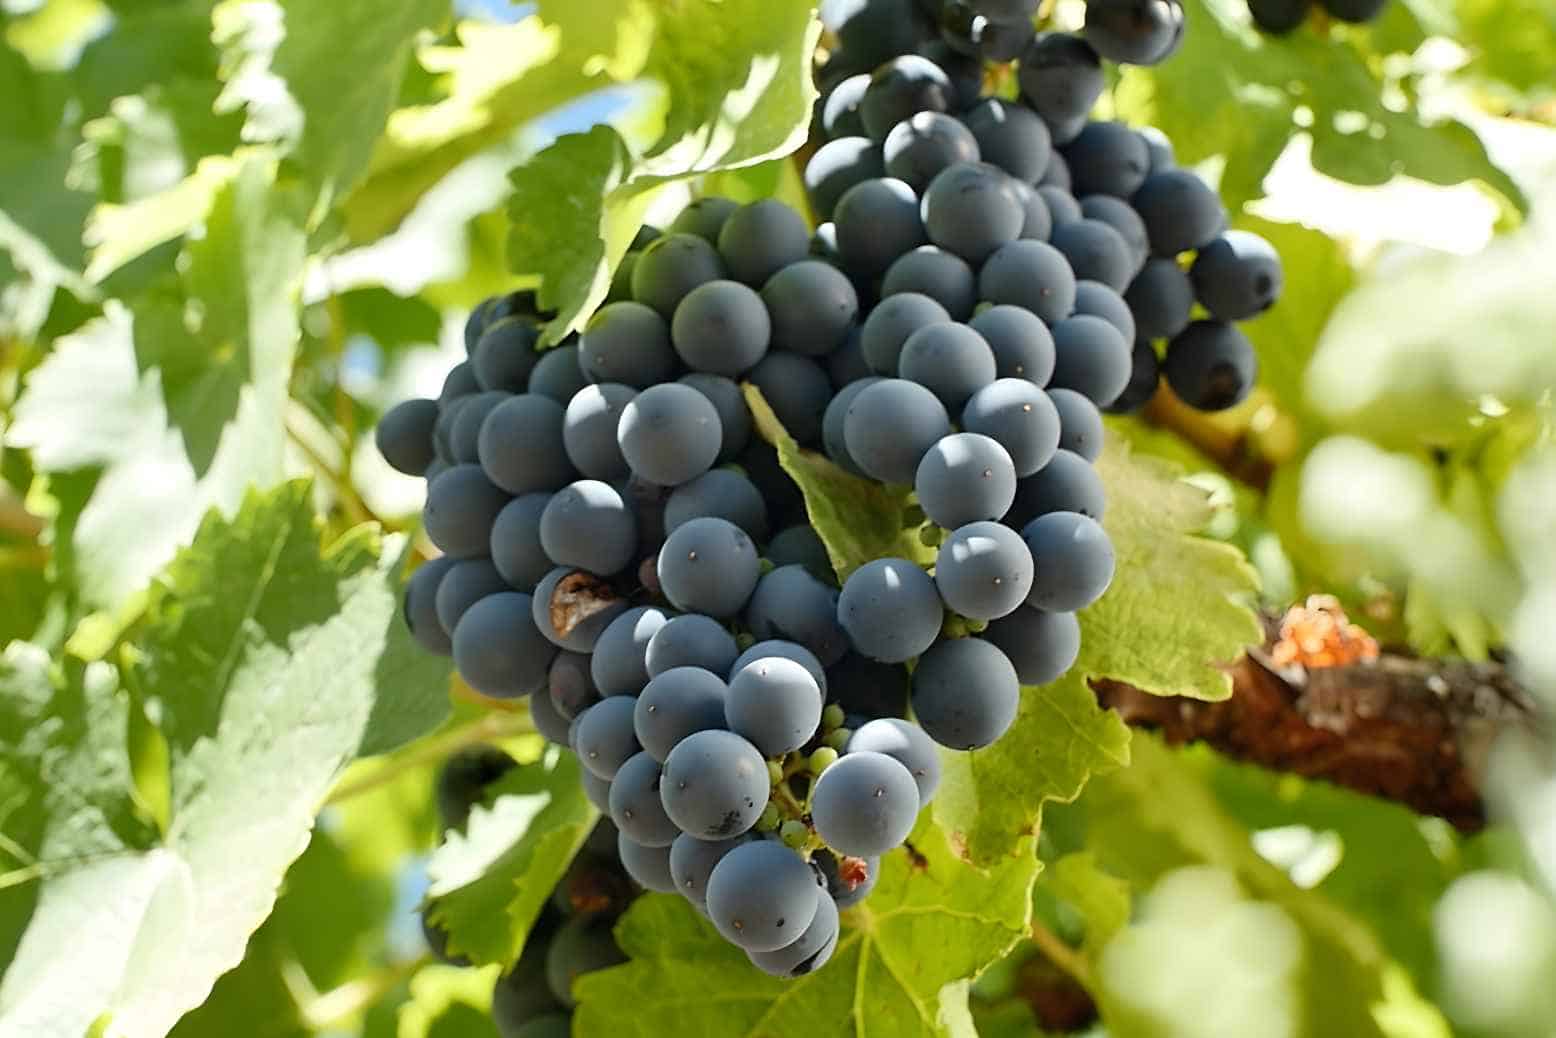 Gamay grapes